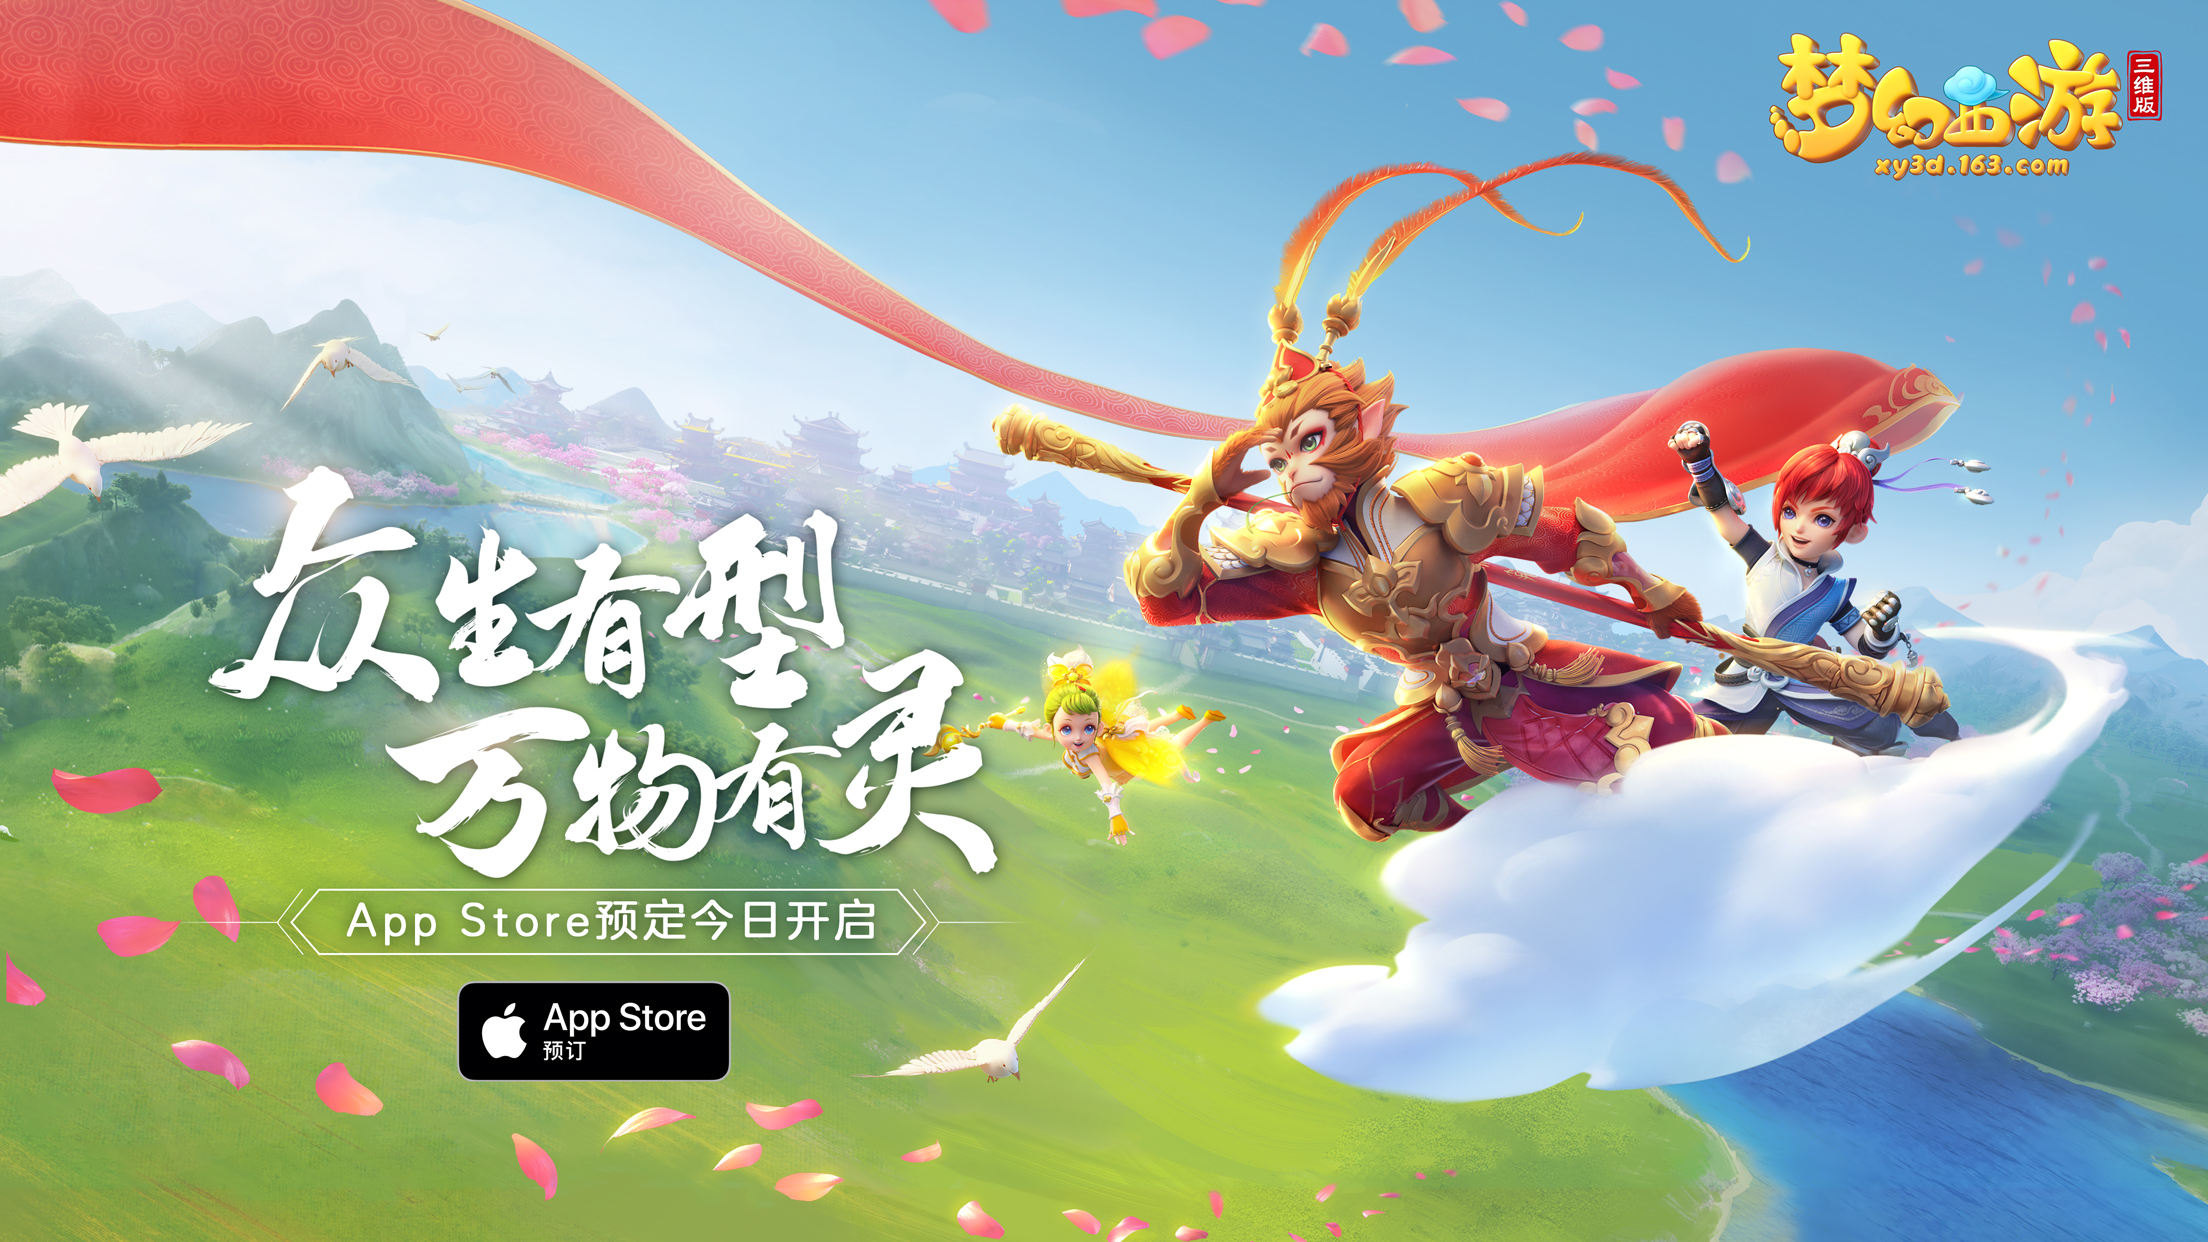 《梦幻西游三维版》公测定档!App Store 预订开启!